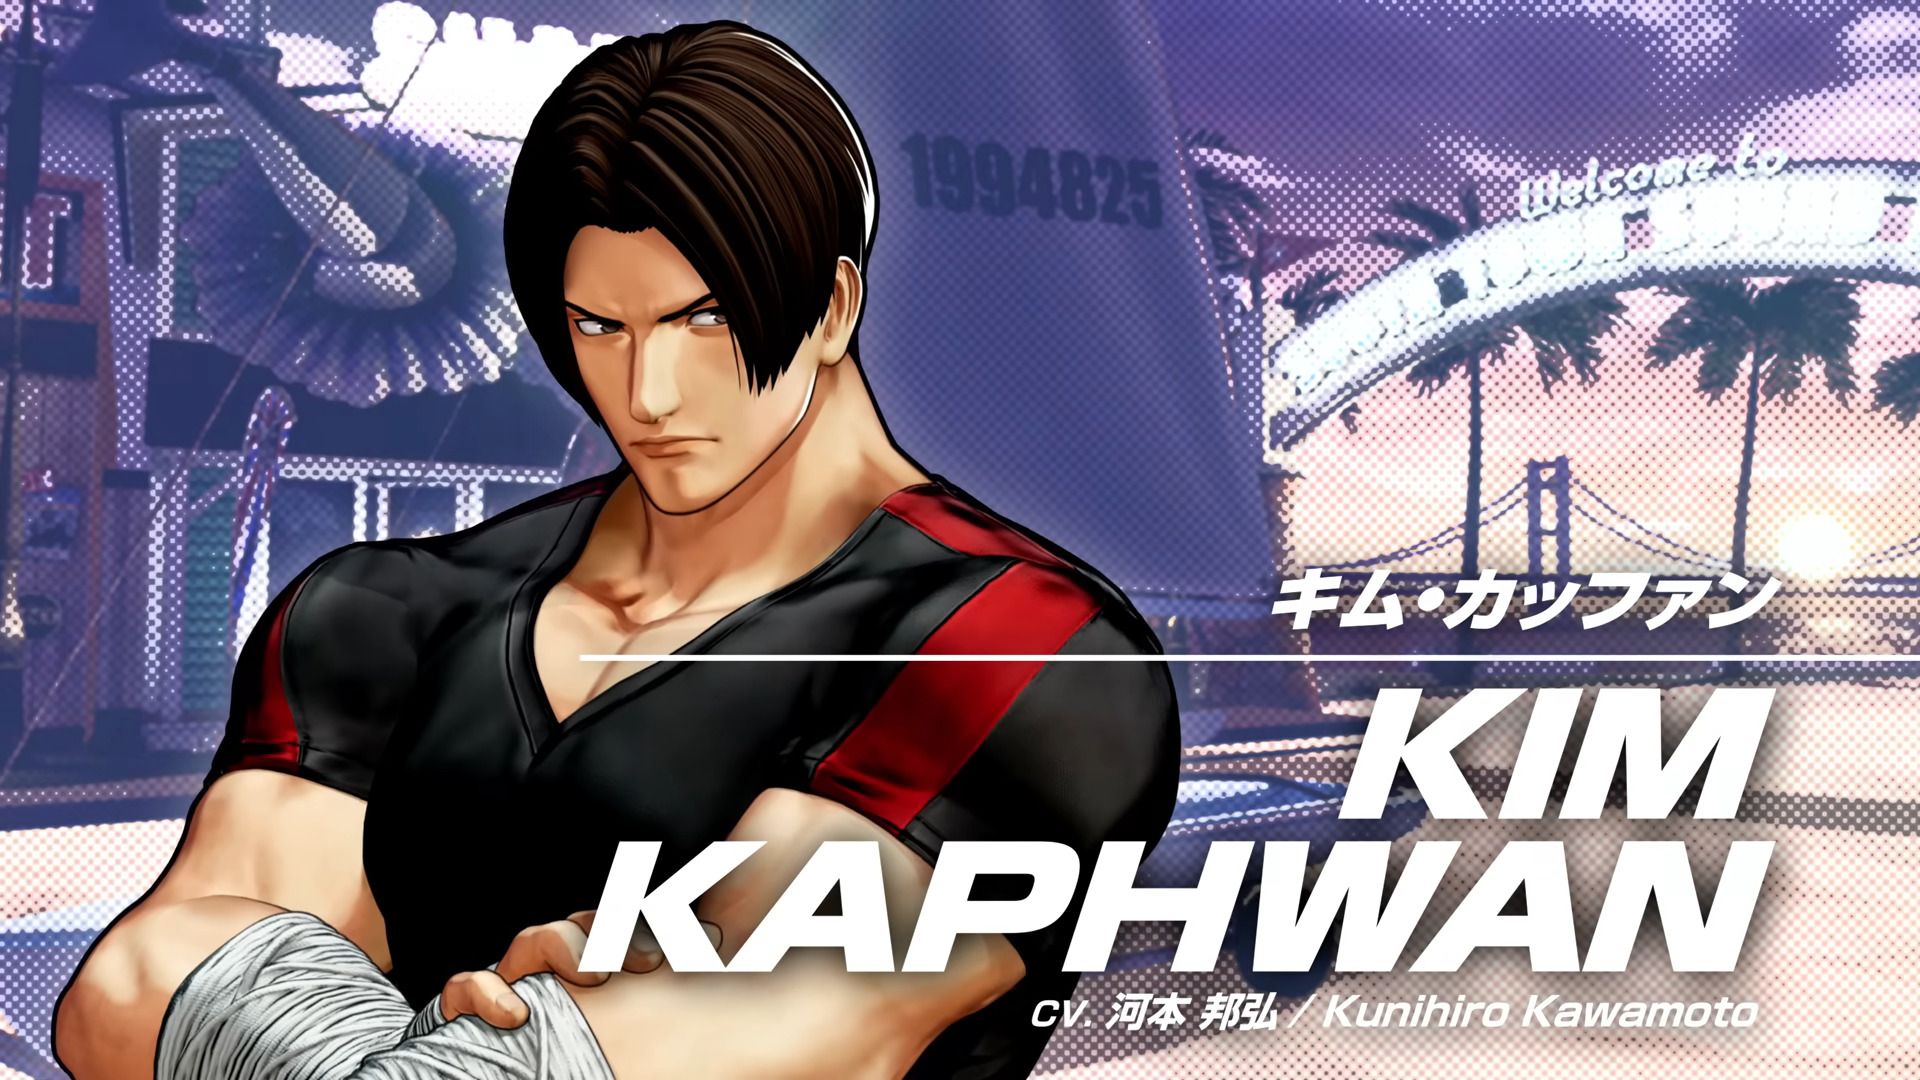 #The King of Fighters XV stellt euch Kim Kaphwan vor, der im Frühling in Season 2 erscheint